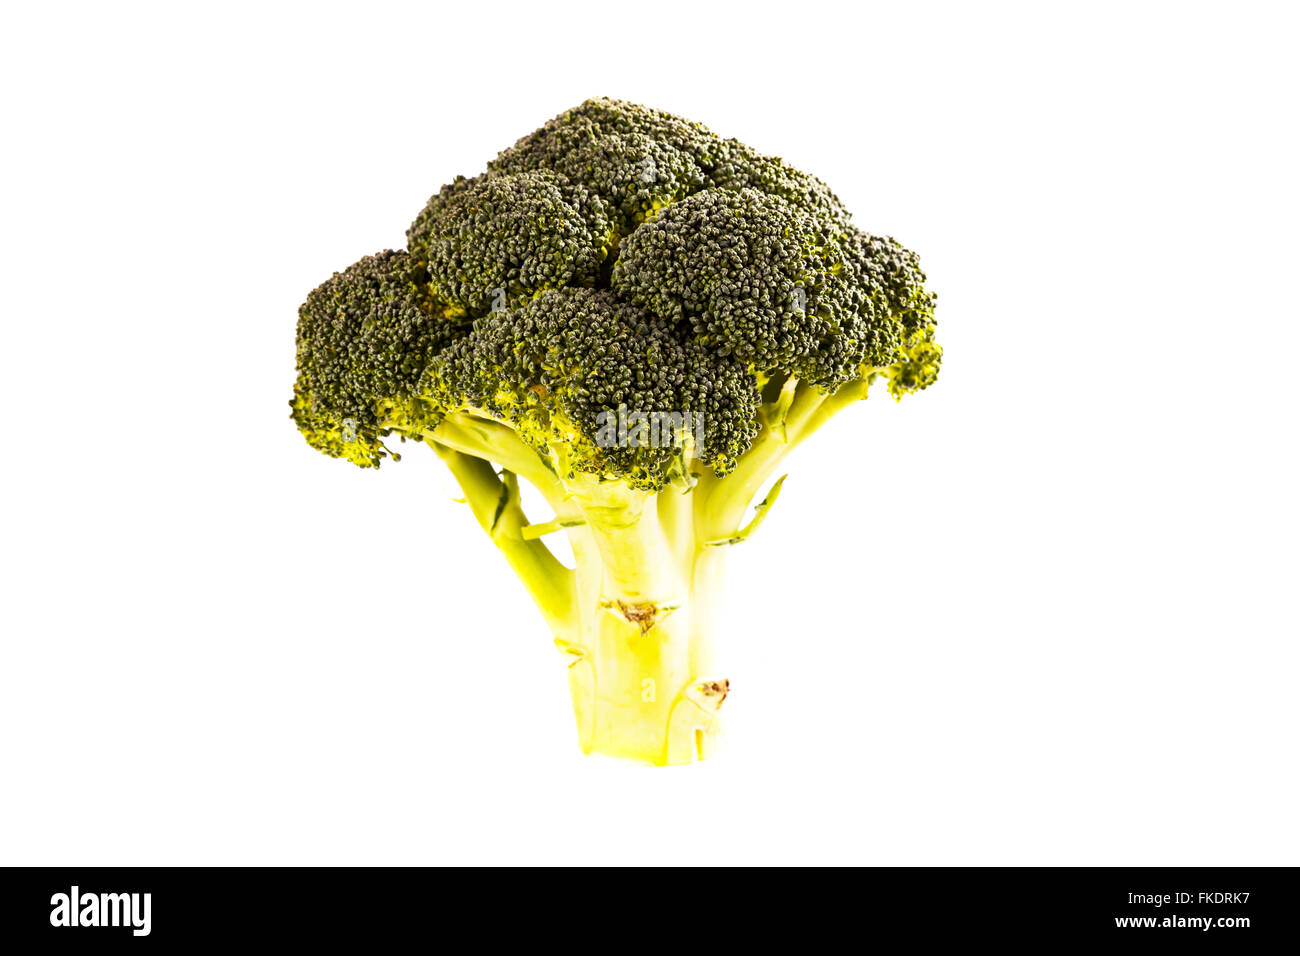 Broccoli ortaggio stelo verde alimentare verdi tagliati ritaglio sfondo bianco isolato Foto Stock